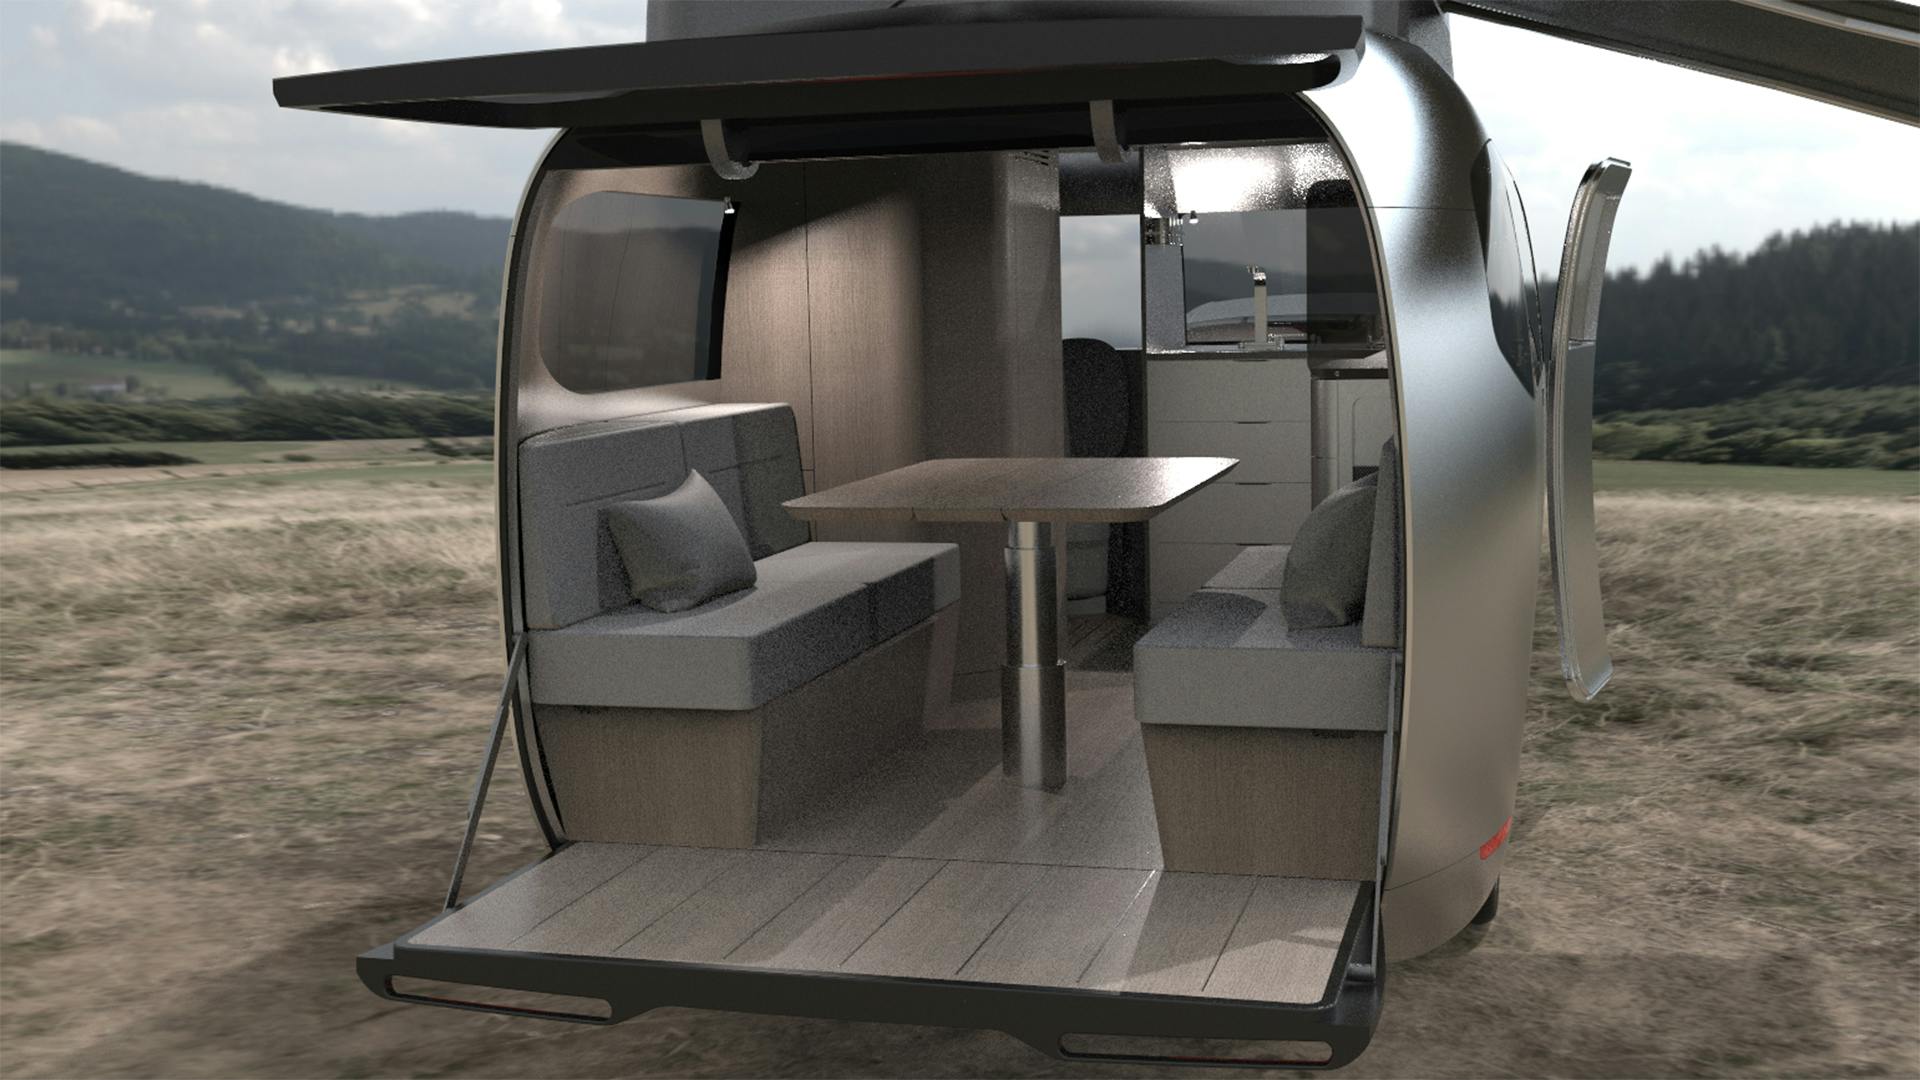 Airstream Porsche camper trailer interior